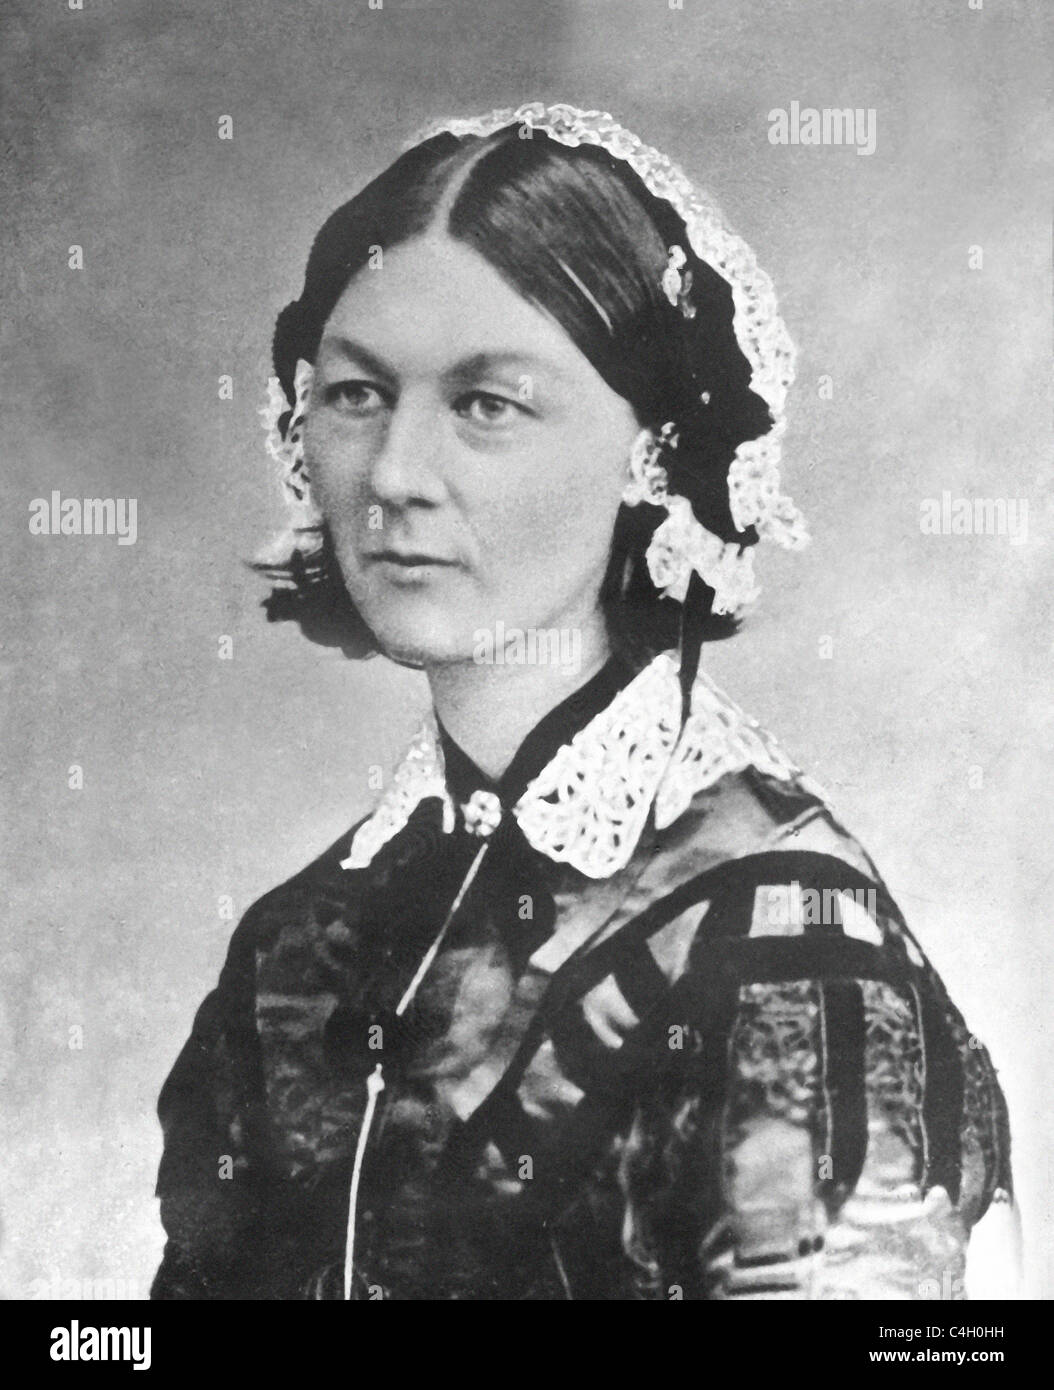 Florence Nightingale es famoso por su labor de enfermería durante la Guerra de Crimea (1854 - 56). Archivos de Prensa Servicio vertical Foto de stock